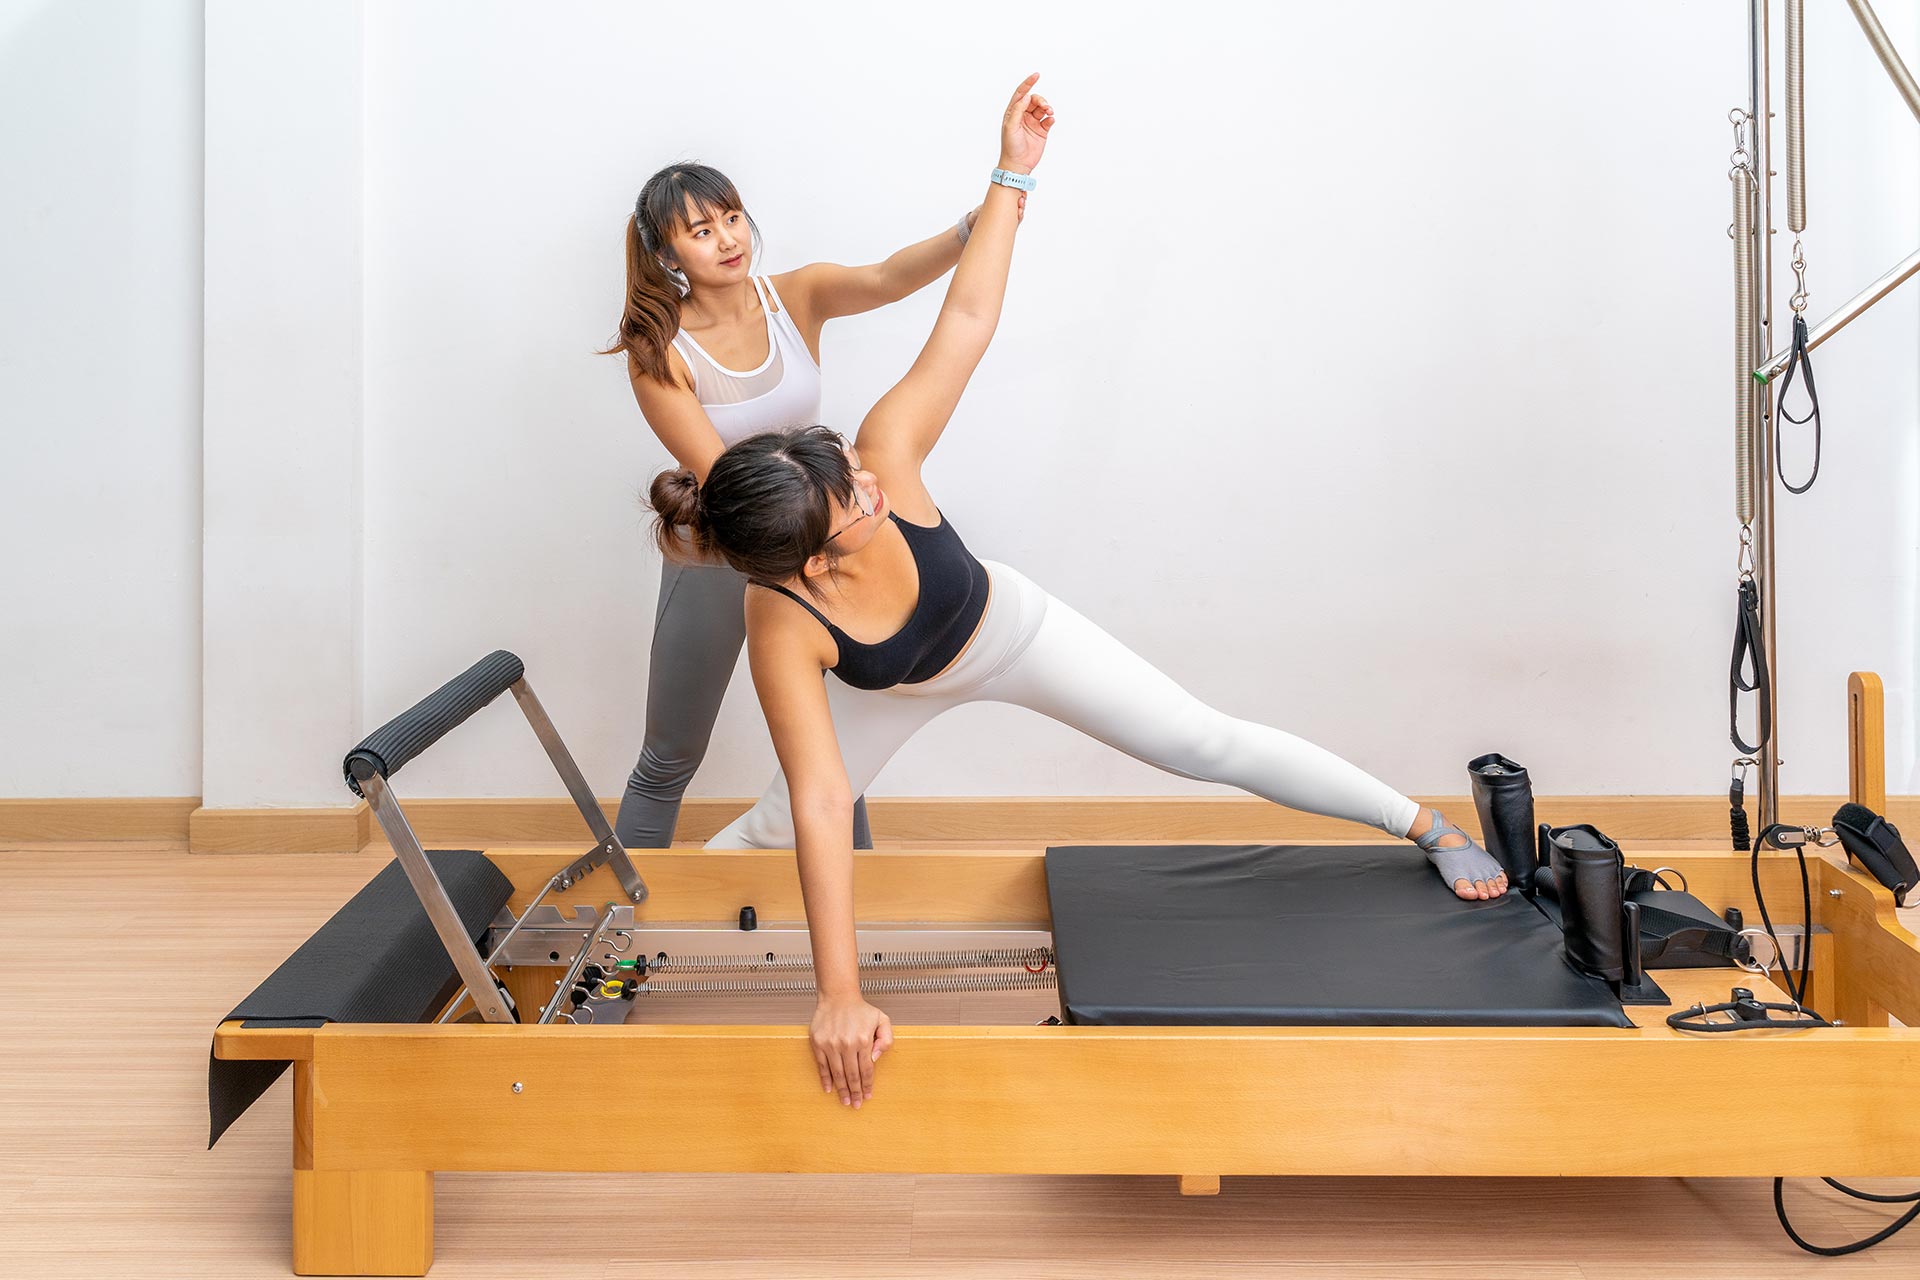 5 posições de ioga para melhorar a saúde sexual feminina - Portal EdiCase